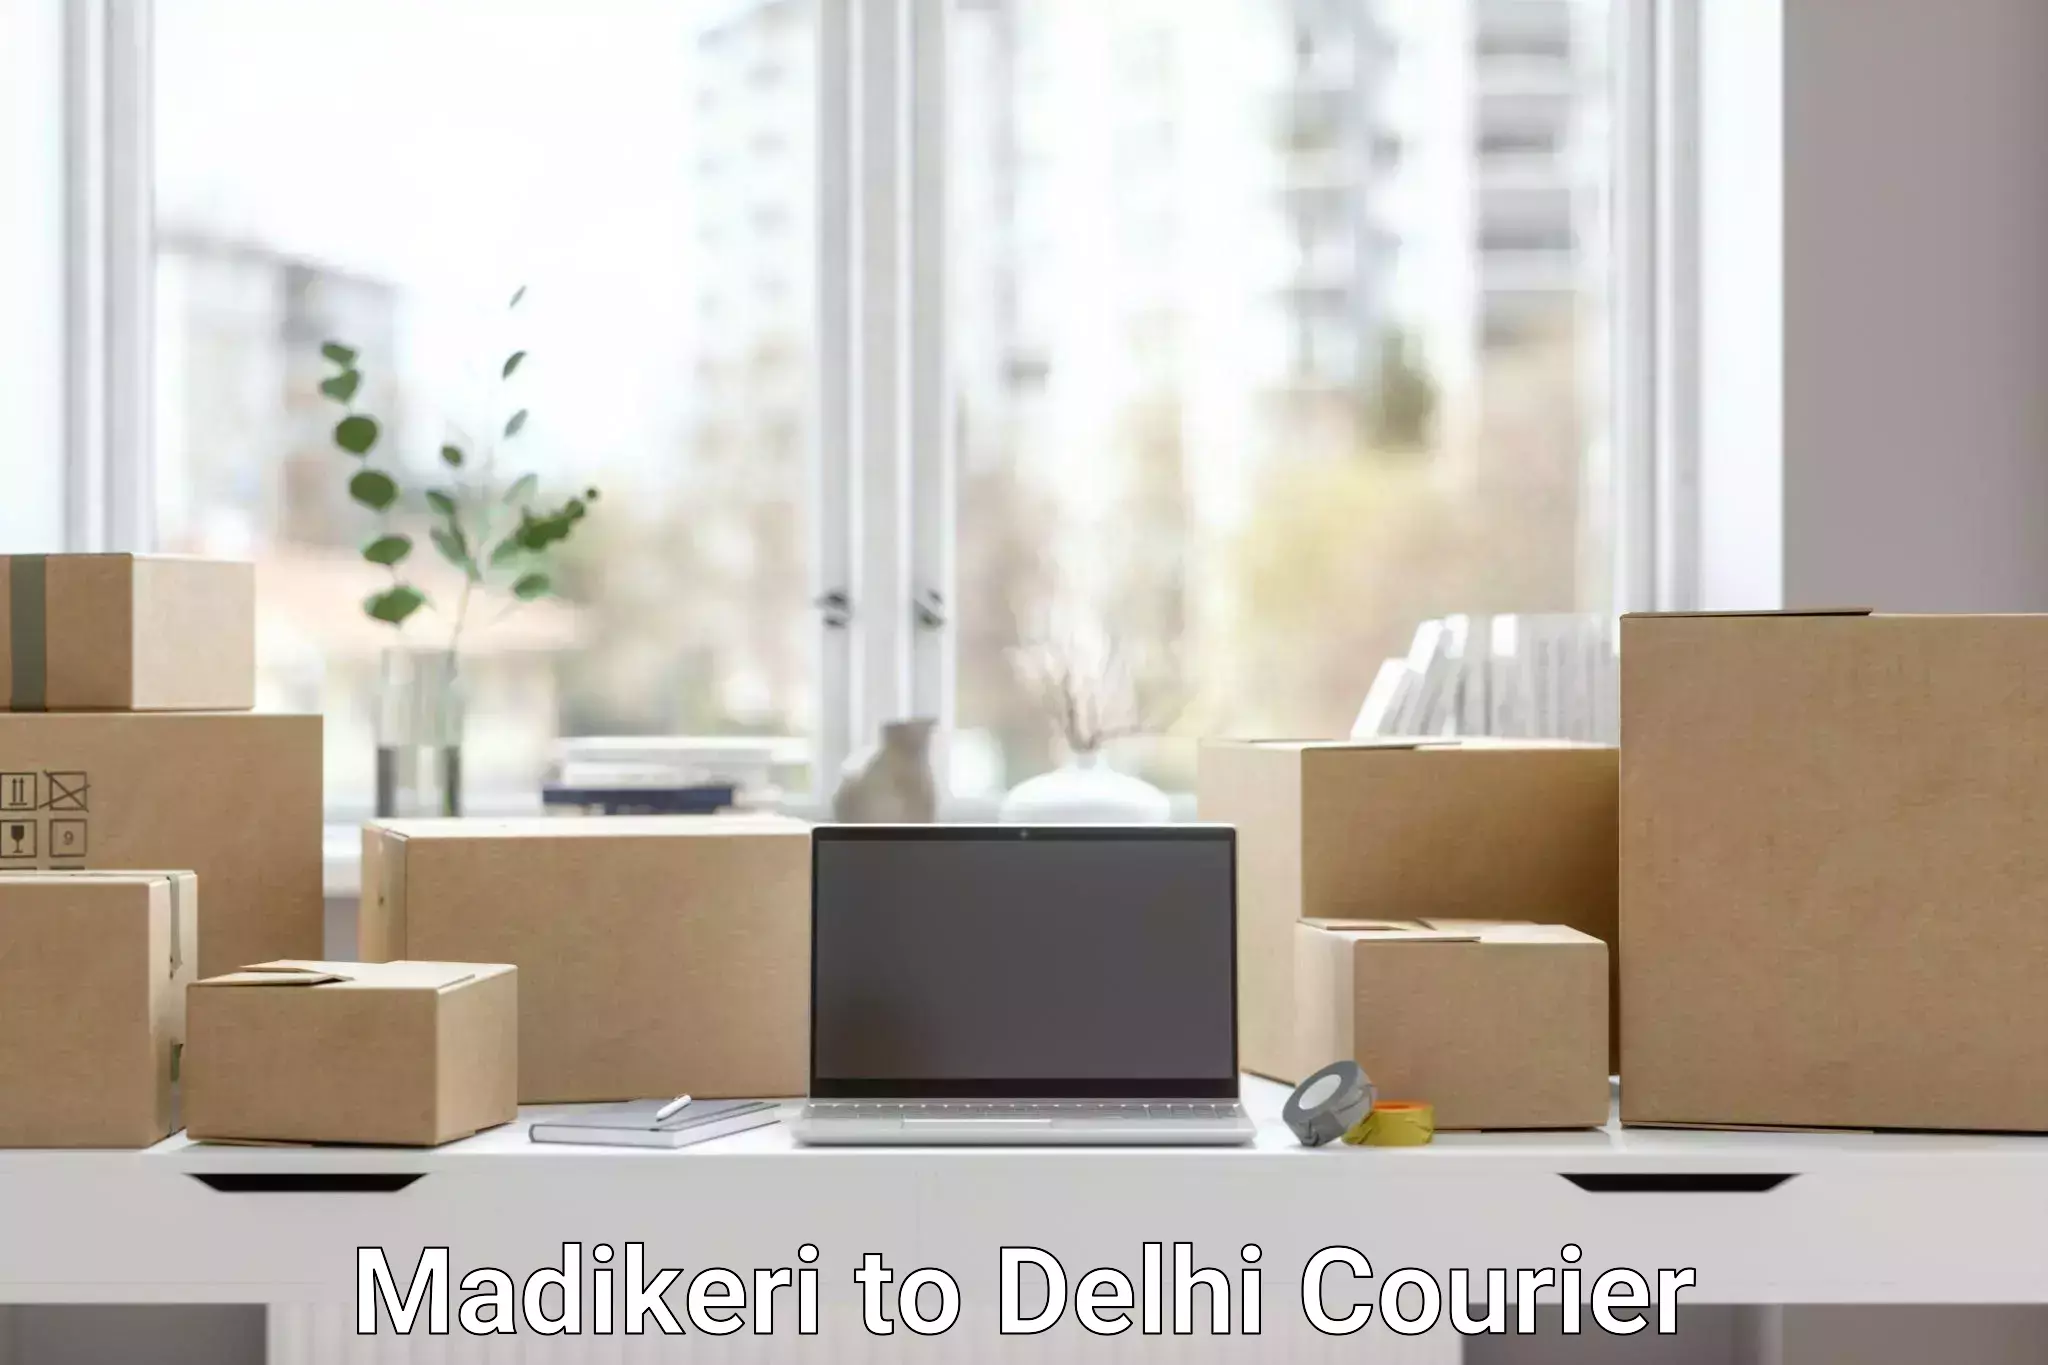 Urban courier service Madikeri to Delhi